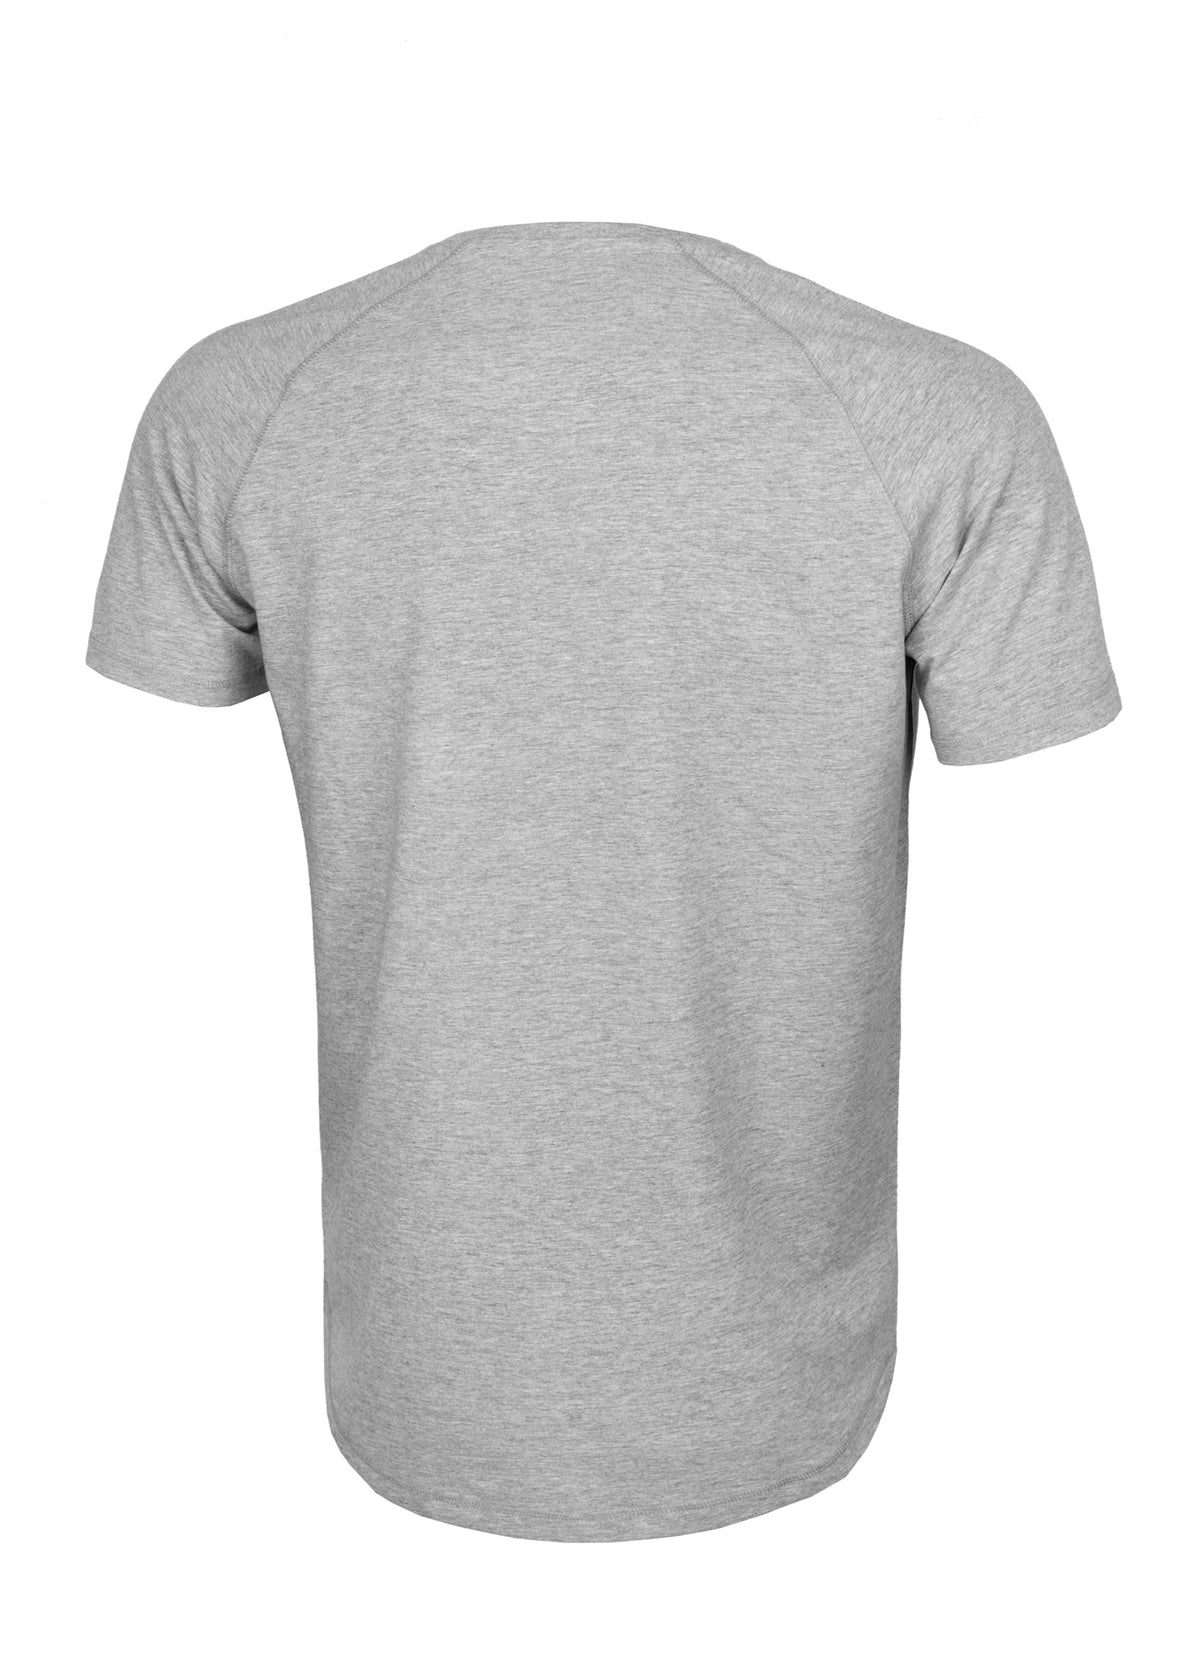 HILLTOP 210 Heavyweight Grey T-shirt - Pitbullstore.eu